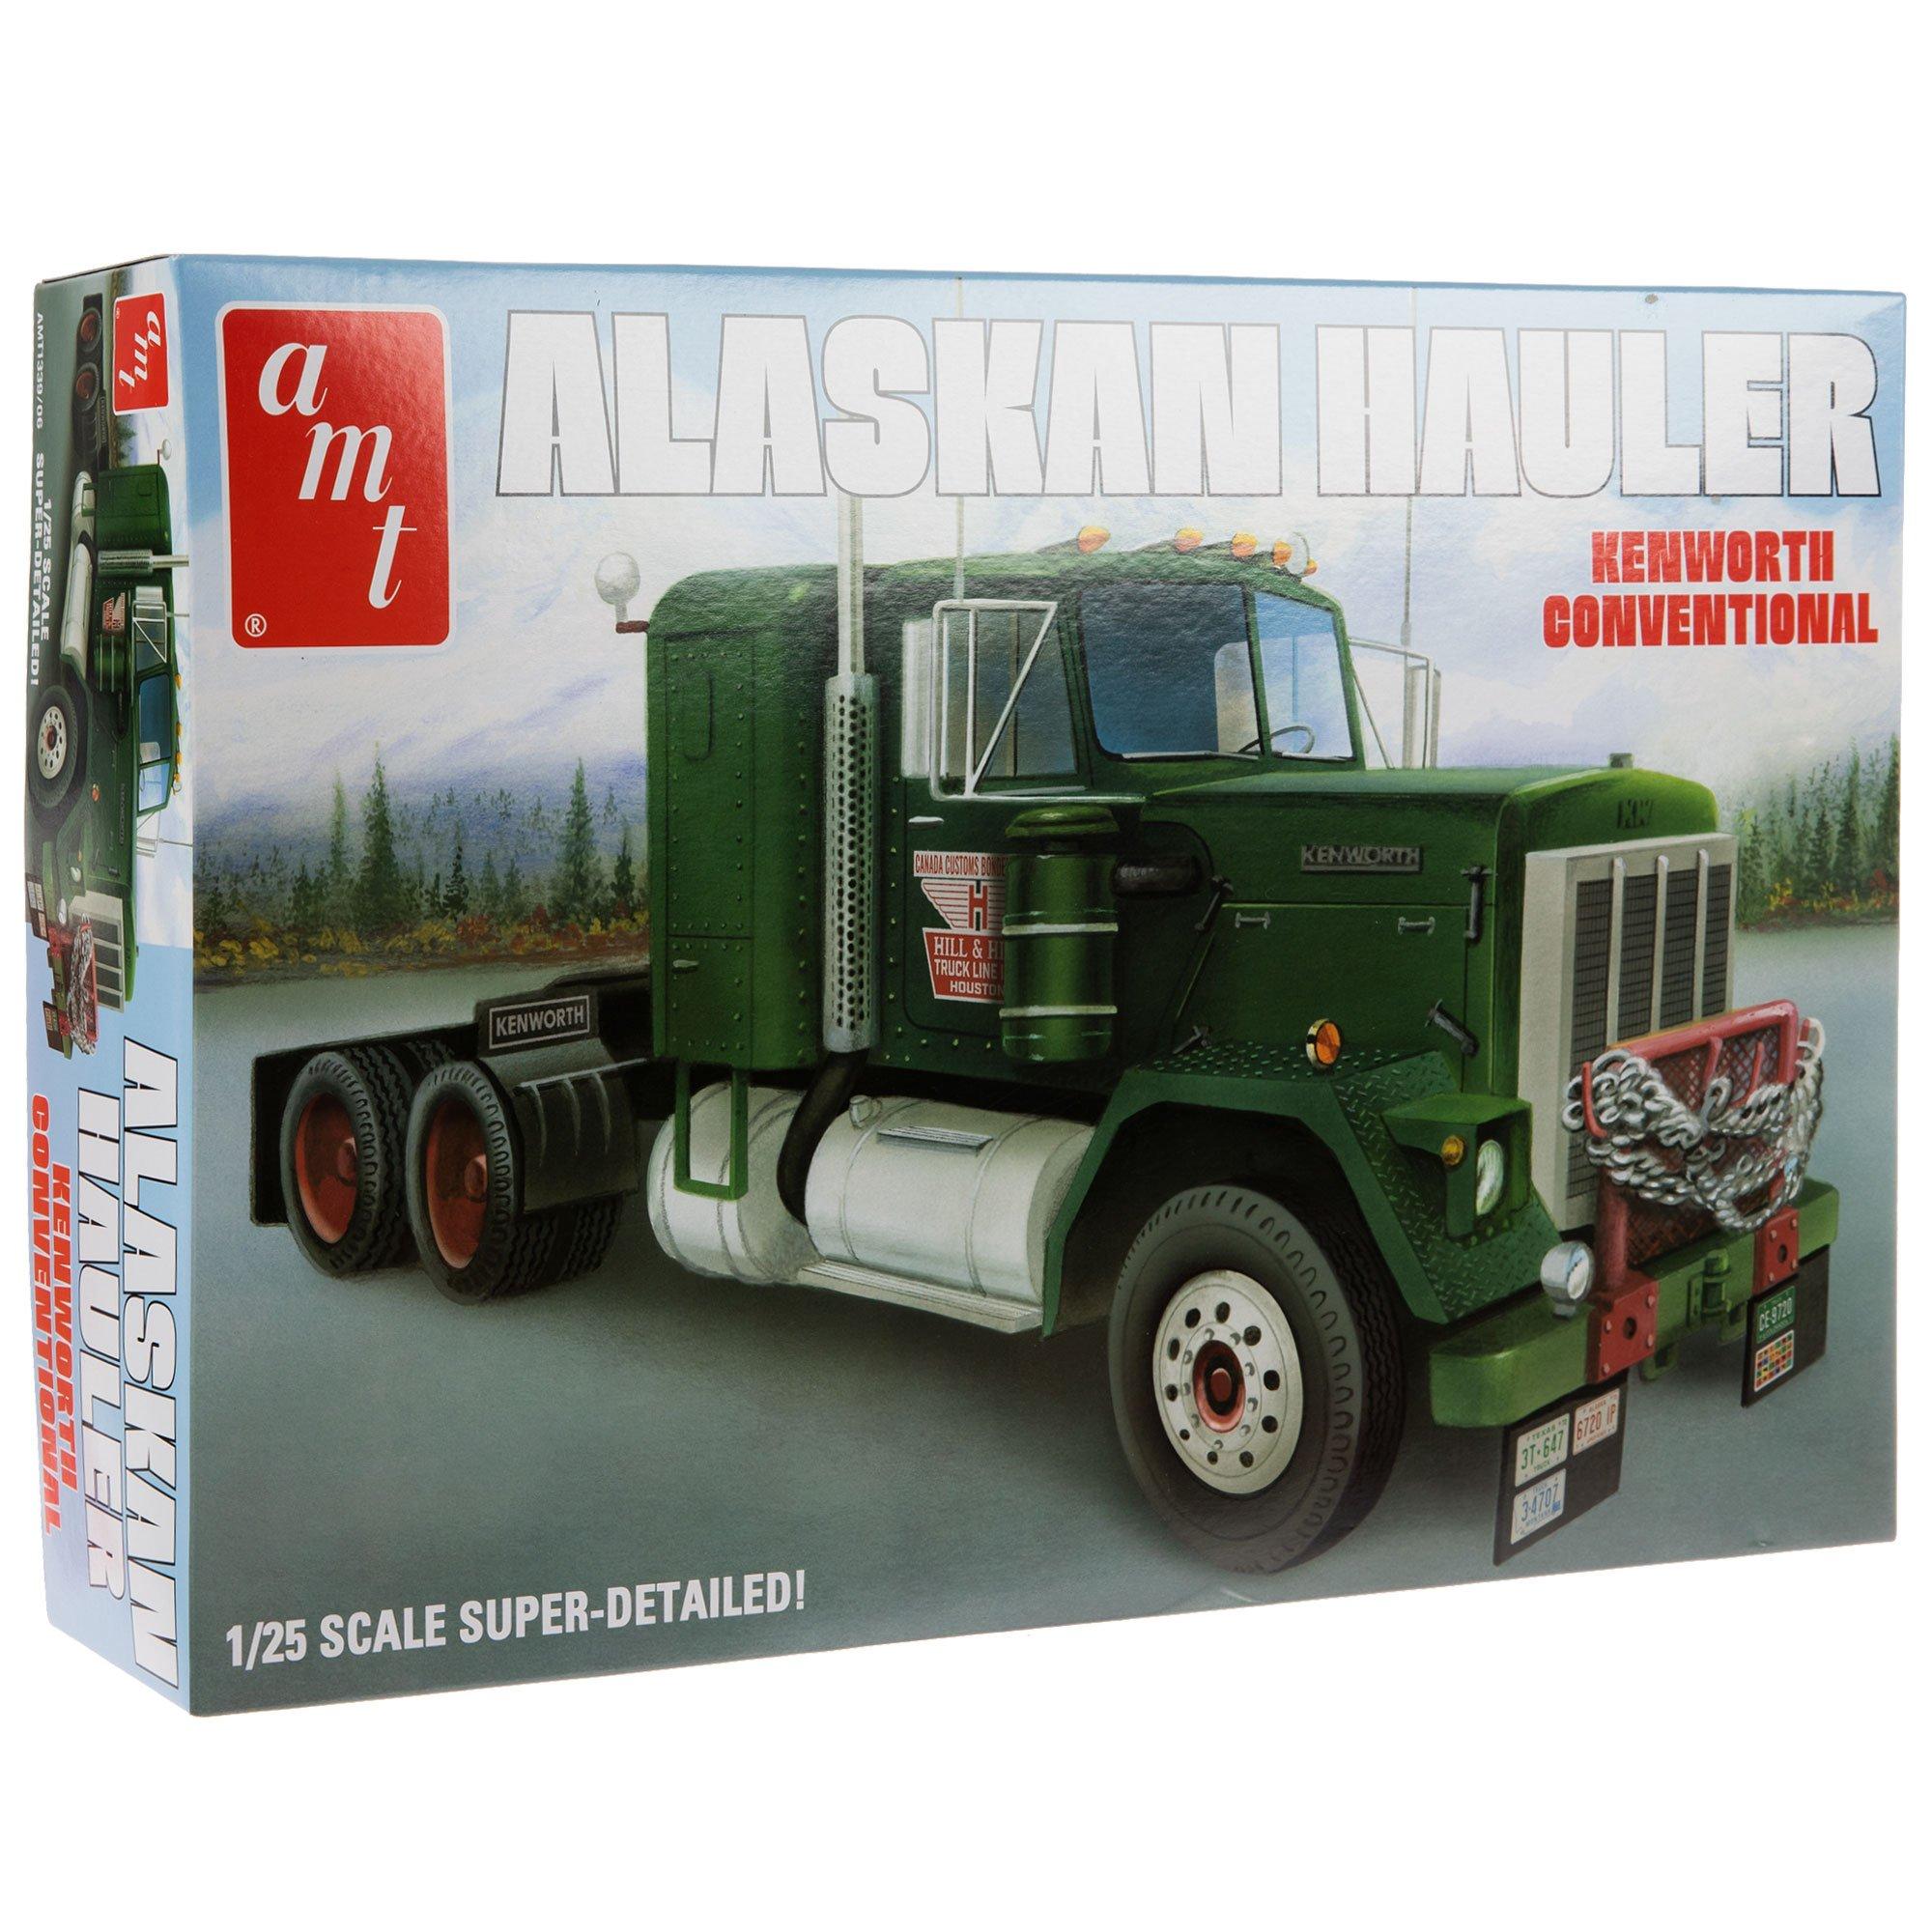 Hauler Truck Model Kit, Hobby Lobby